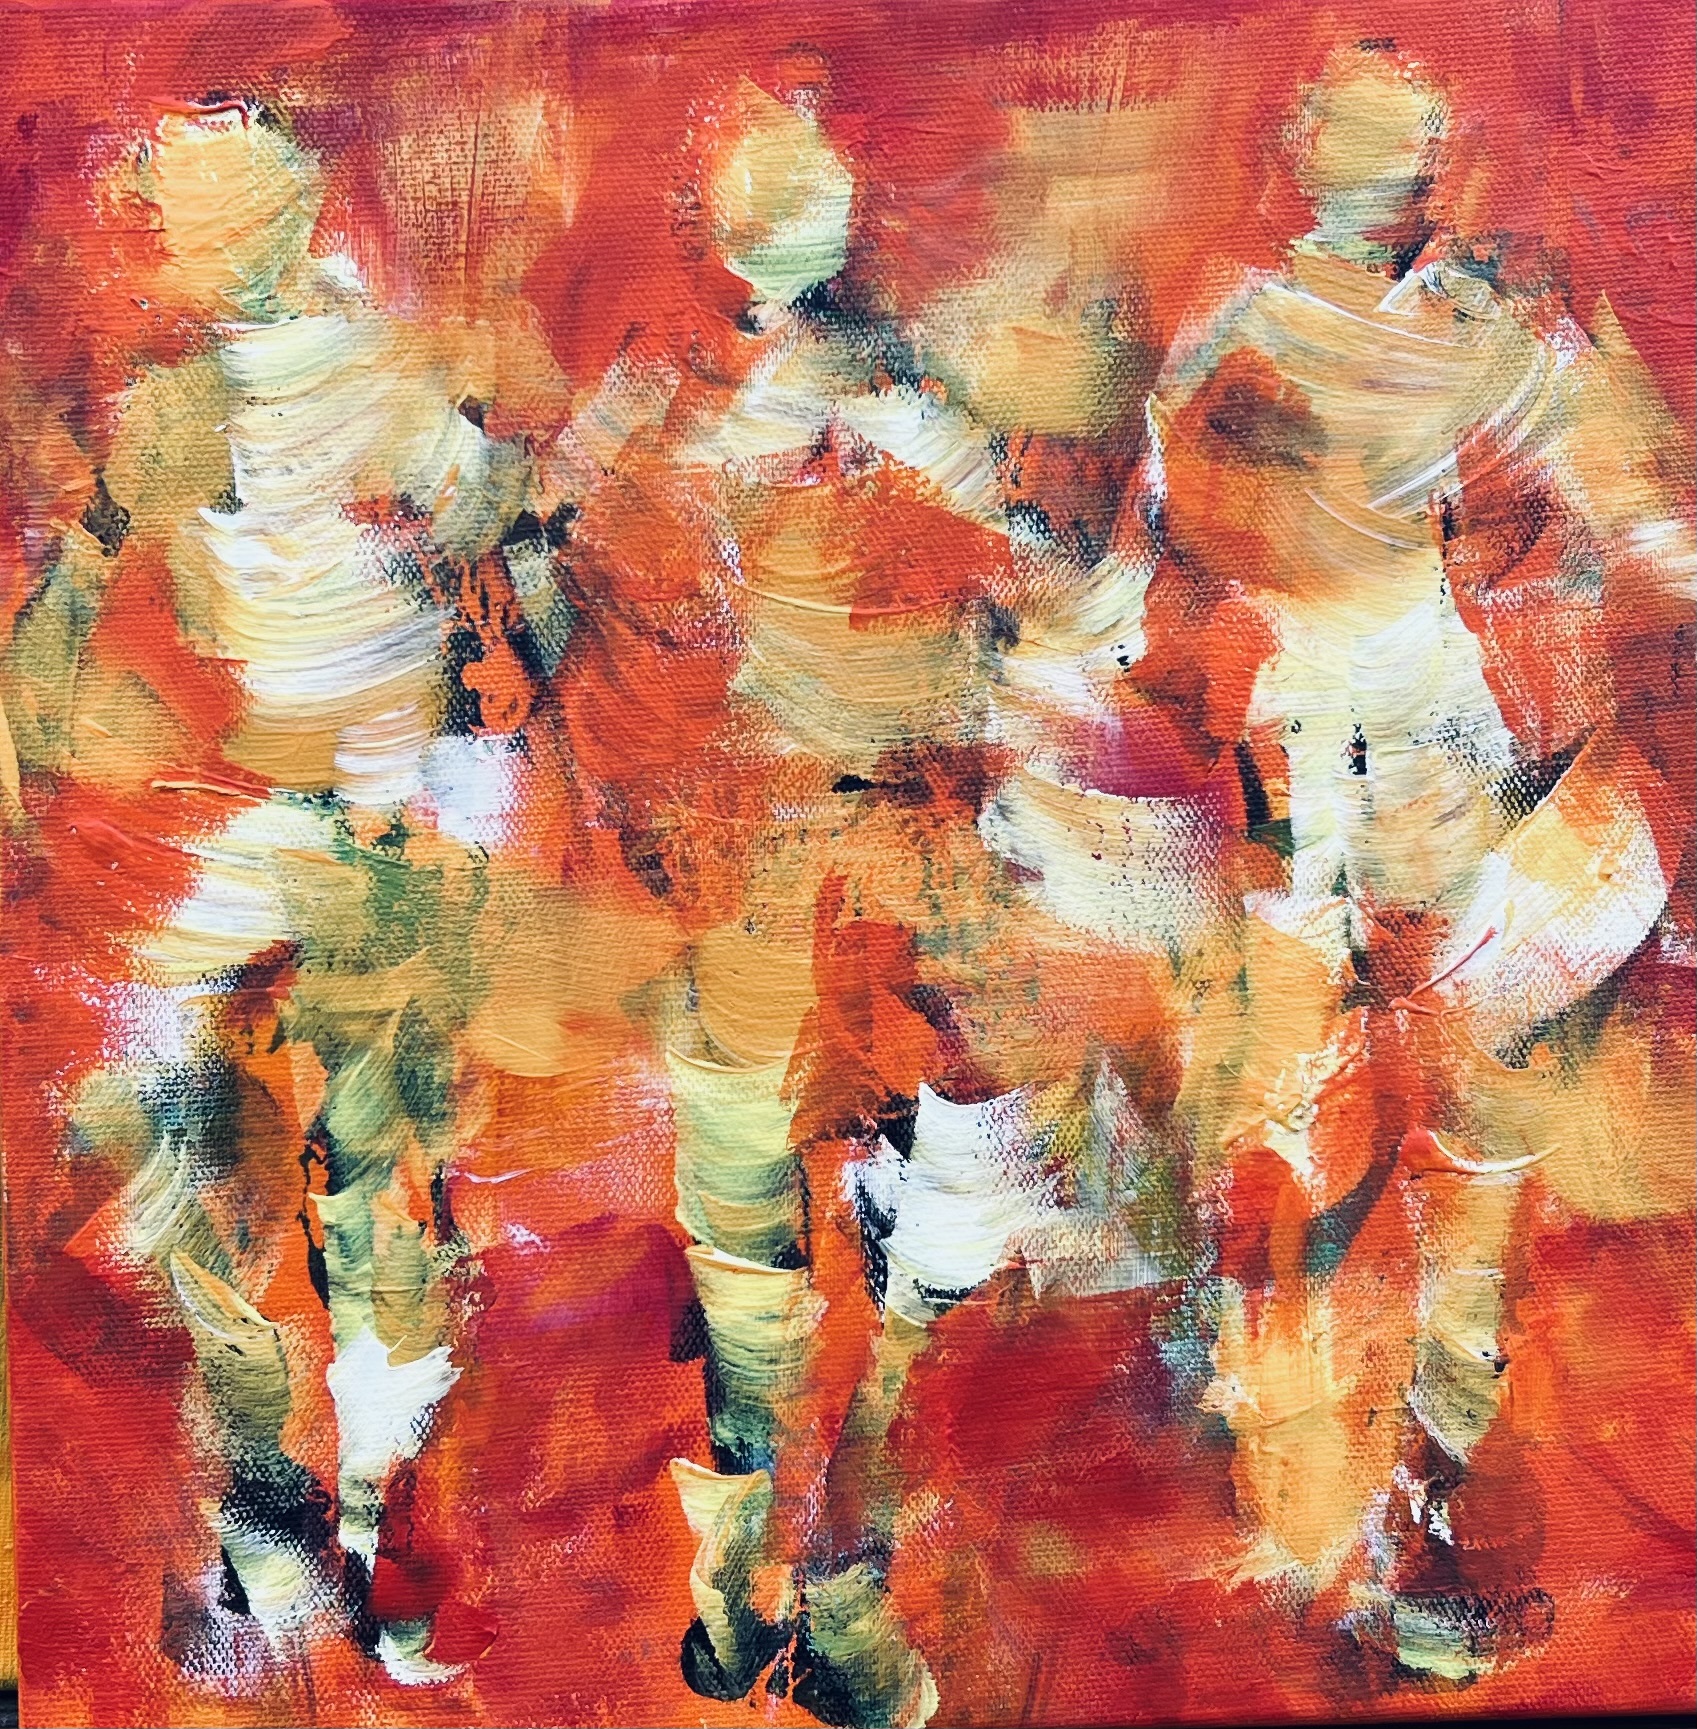 Lille abstrakt maleri af personer der løber. De spændende dynamiske strøg giver bevægelse og energi i maleri og et abstrakt udytryk.